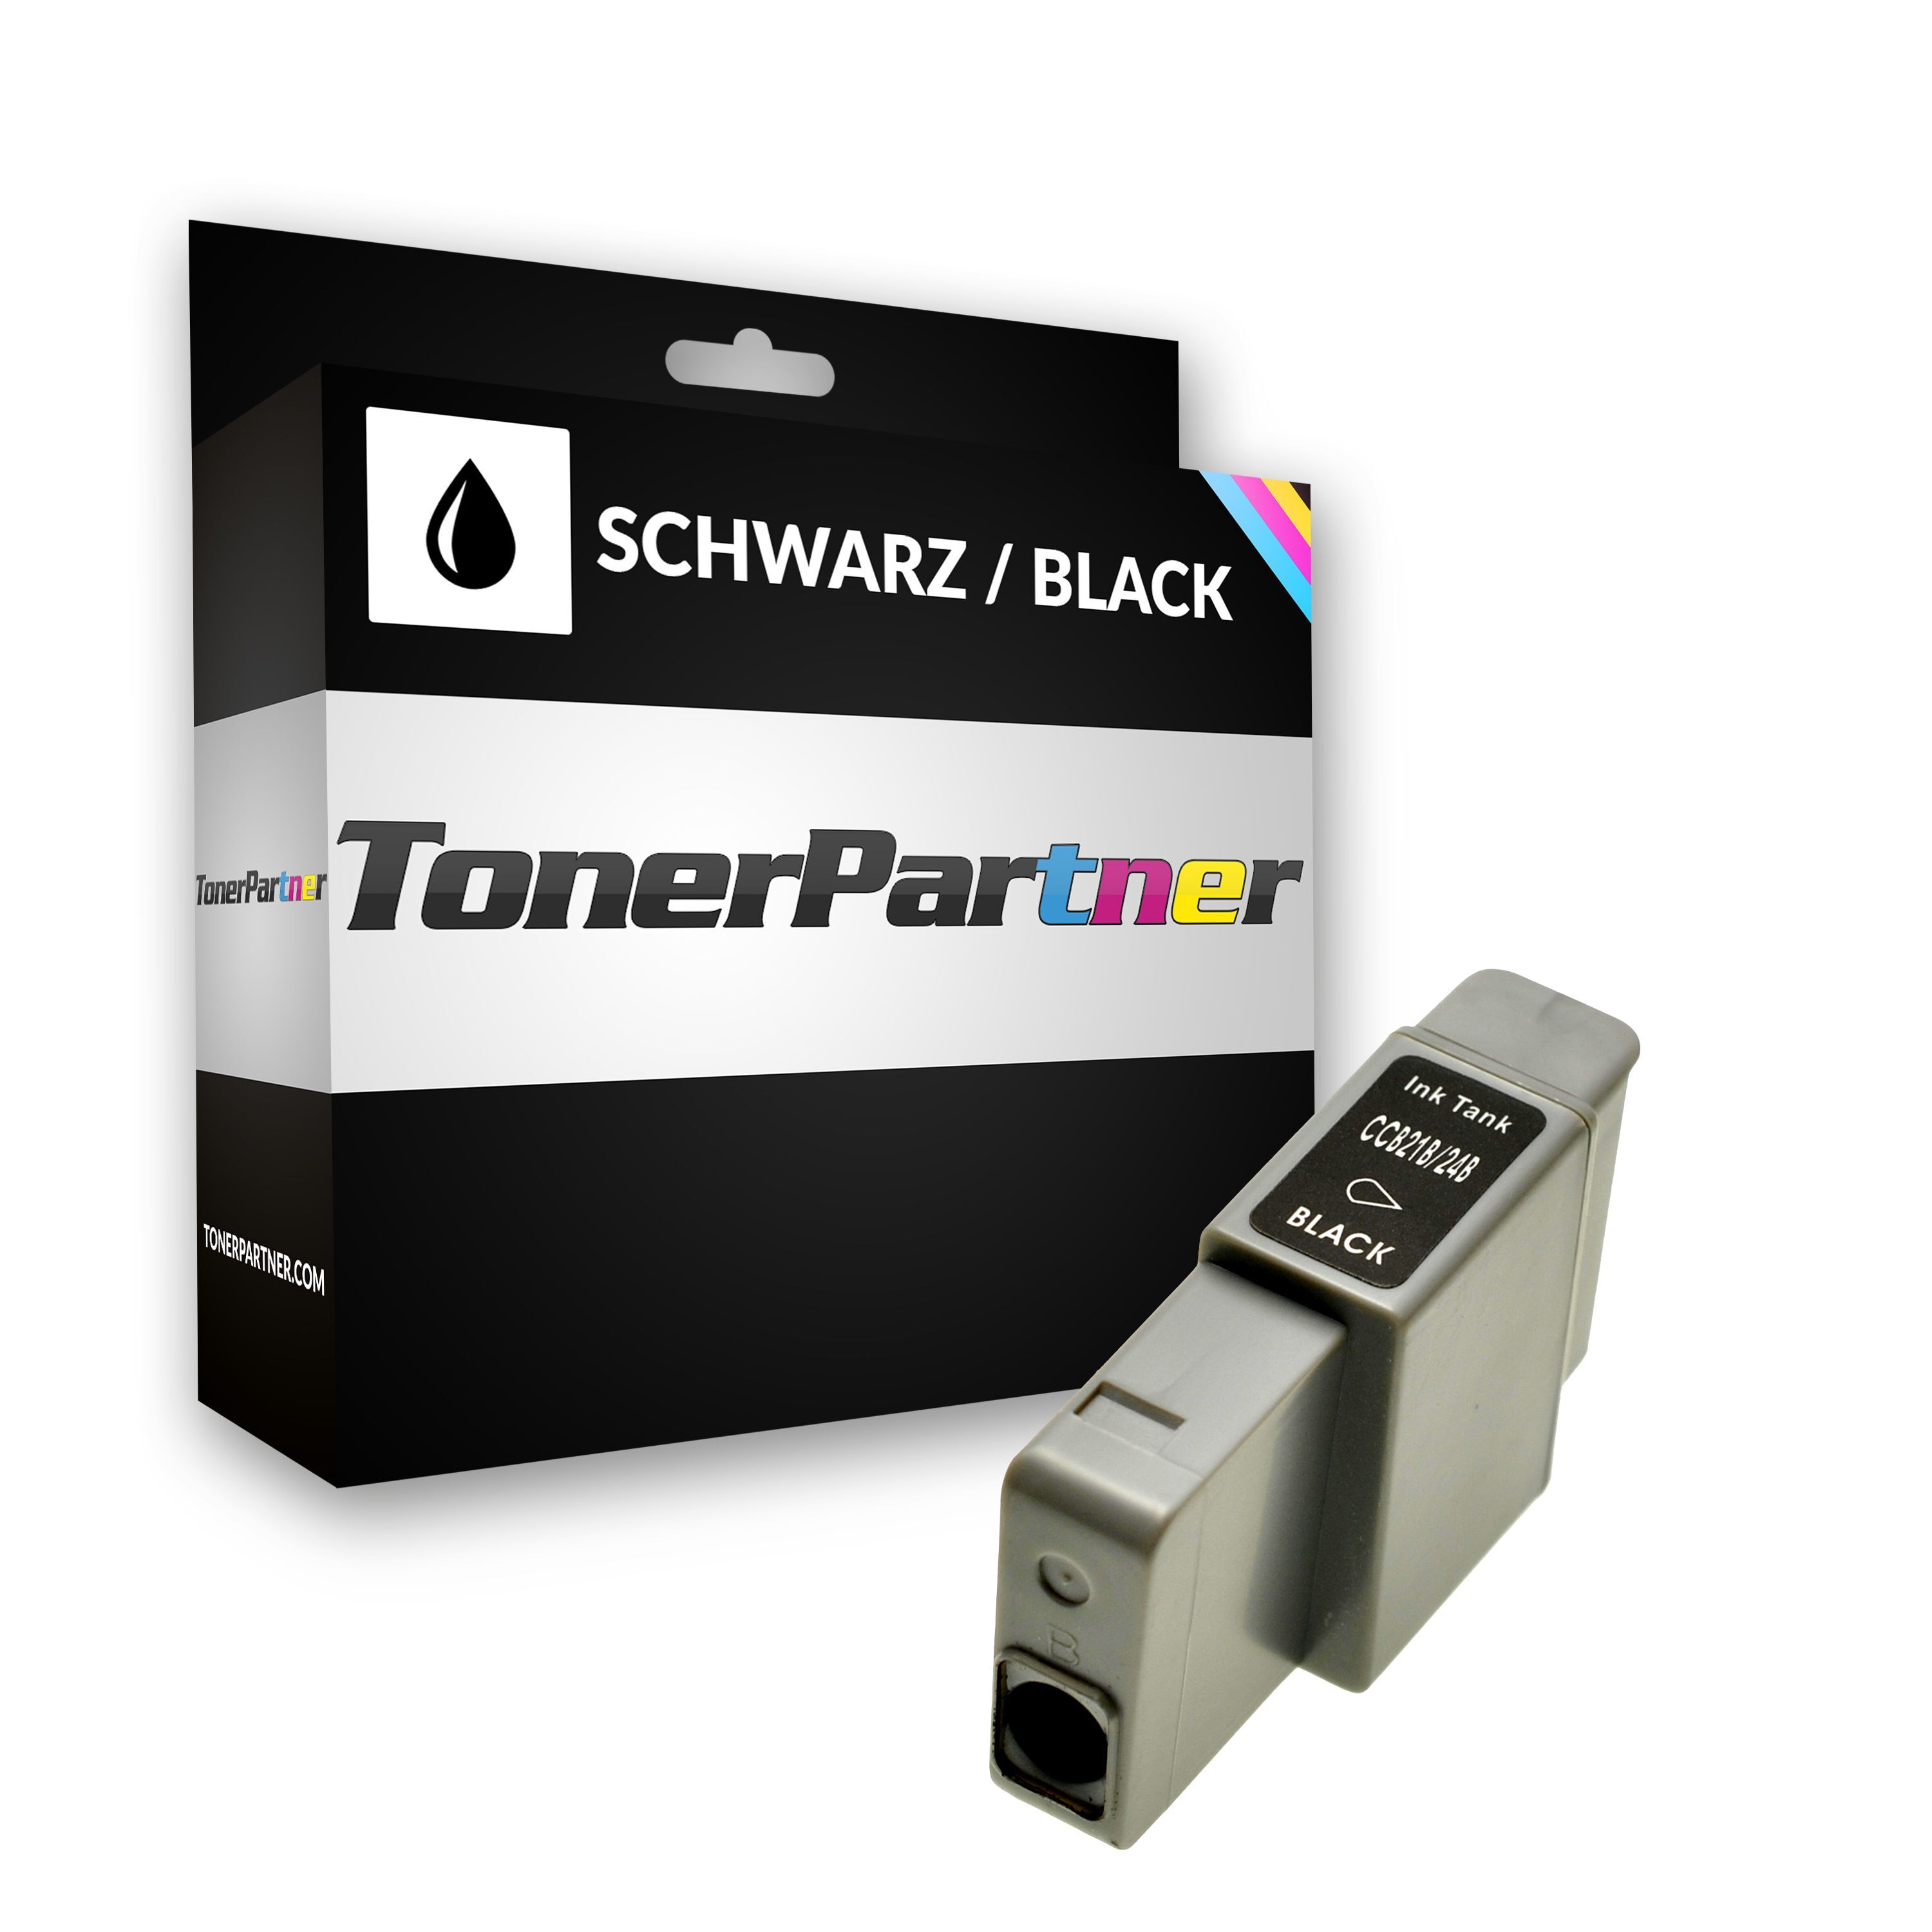 TonerPartner Kompatibel zu Canon Pixma MP 390 Tintenpatrone (BCI-24 BK / 6881 A 002) schwarz, 240 Seiten, 1,44 Rp pro Seite, Inhalt: 9 ml von TonerPartner